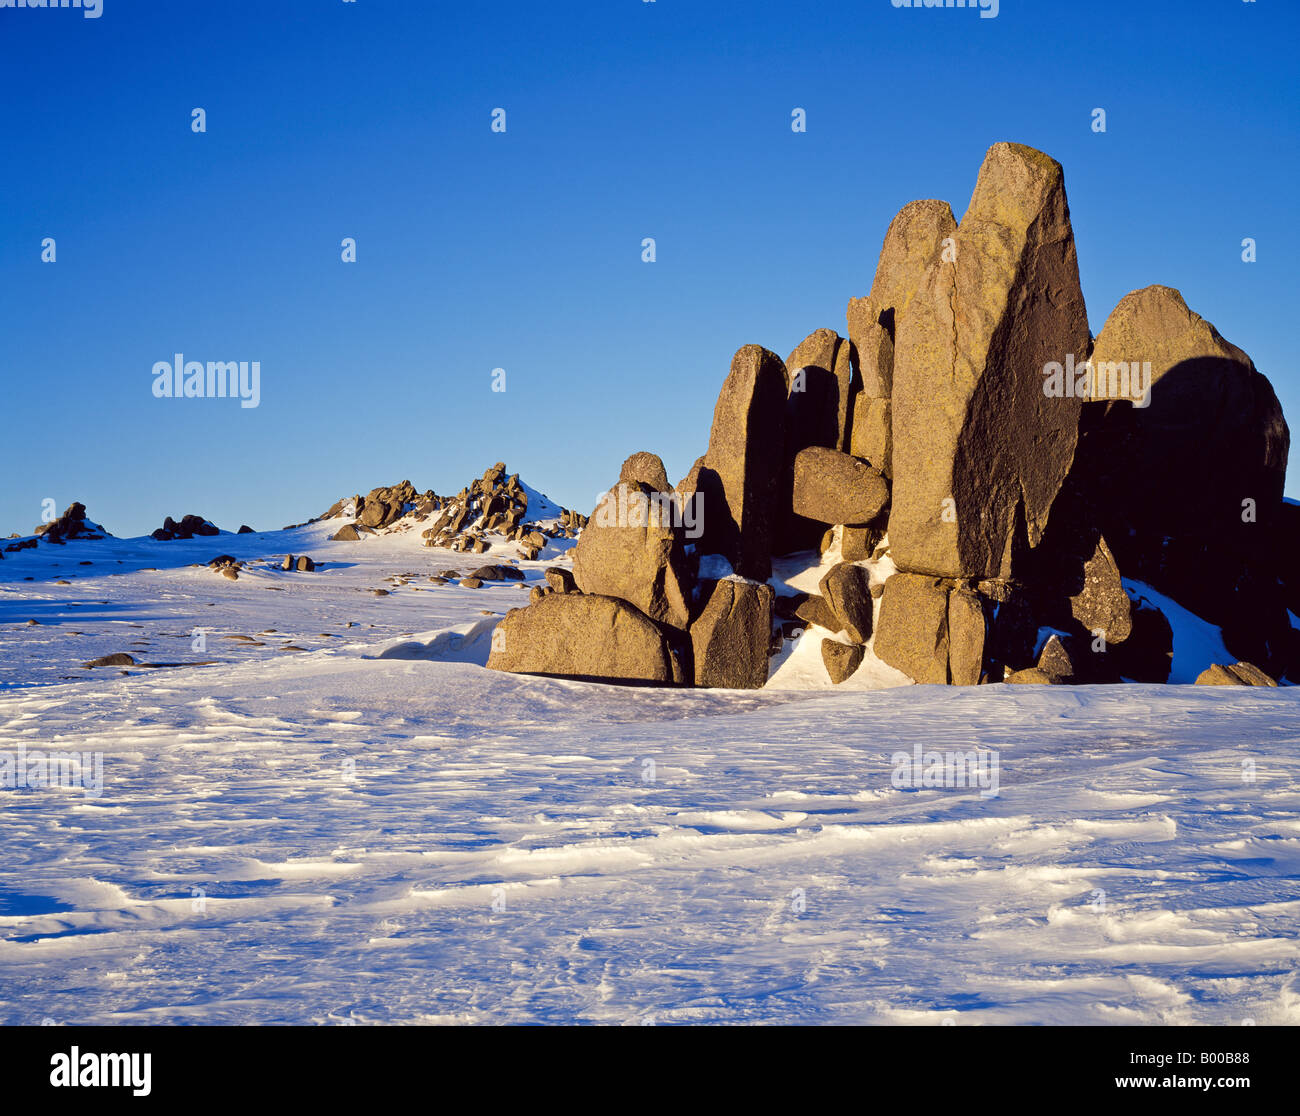 Sur le tdr granit Gamme Ramshead en hiver neige montagnes enneigées du Parc National Kosciuszko Australie Nouvelle Galles du Sud Banque D'Images